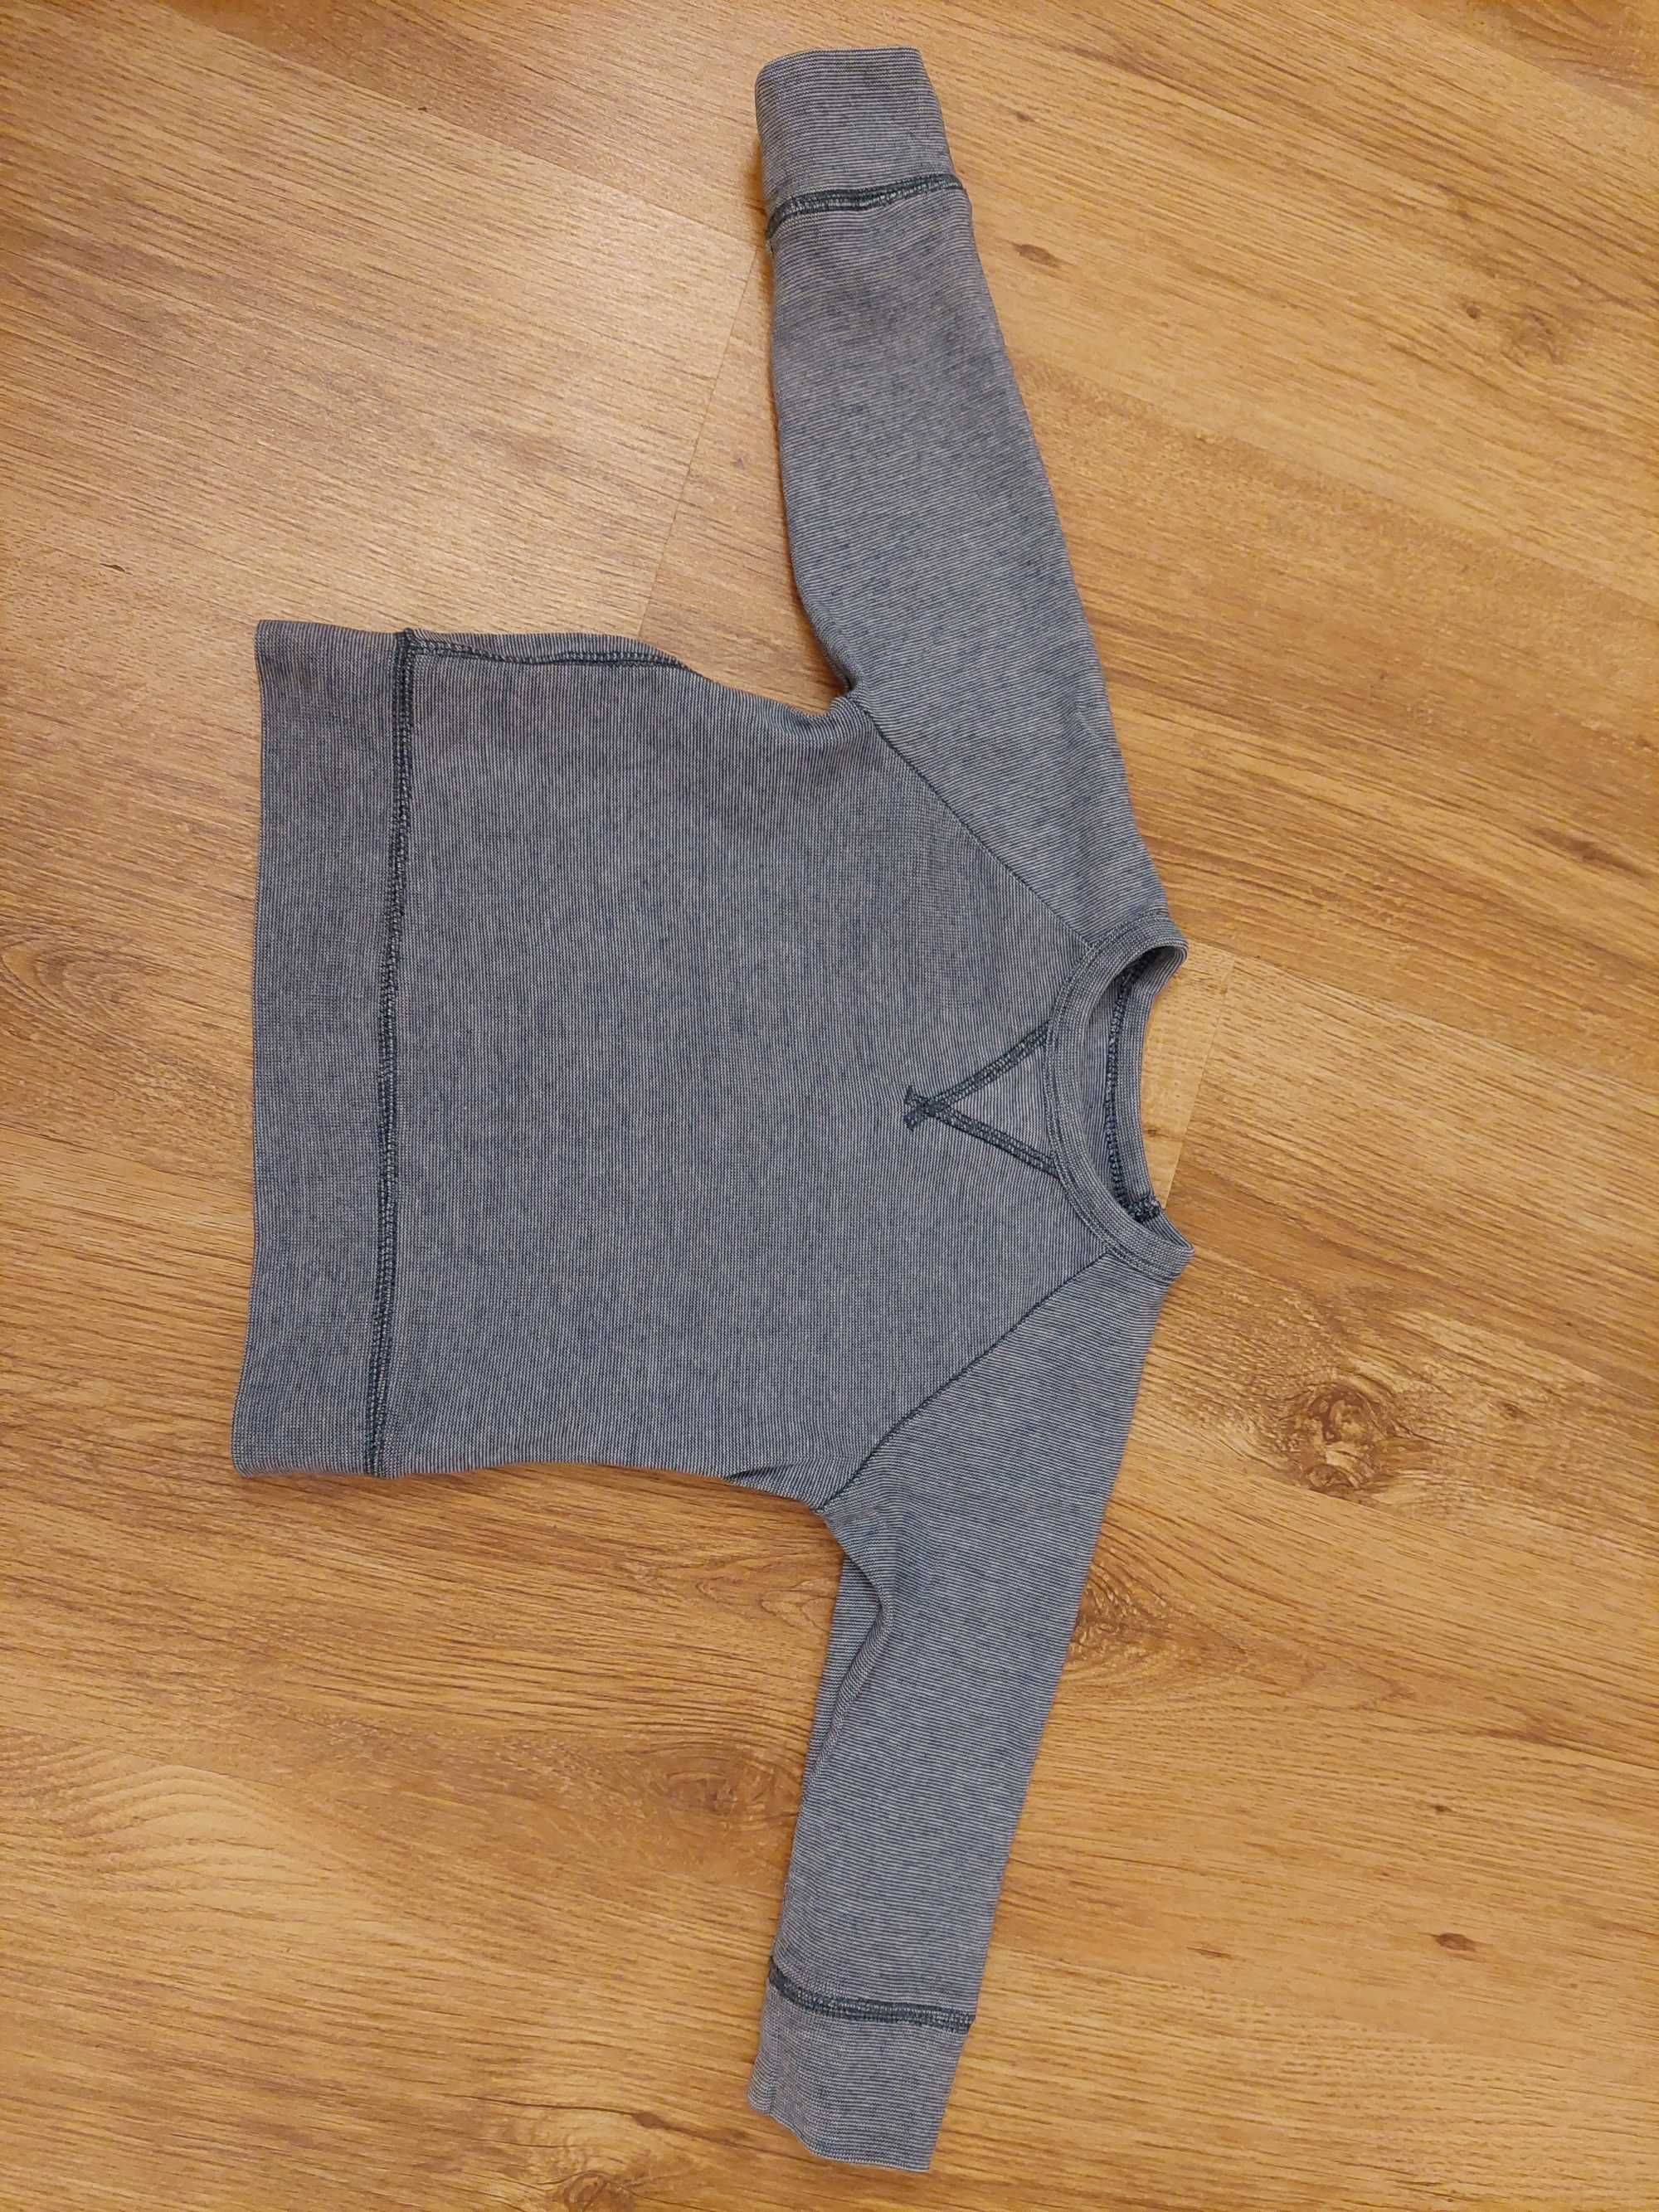 Bluza bluzka sweter dla chłopca 92cm 18-24 miesiące